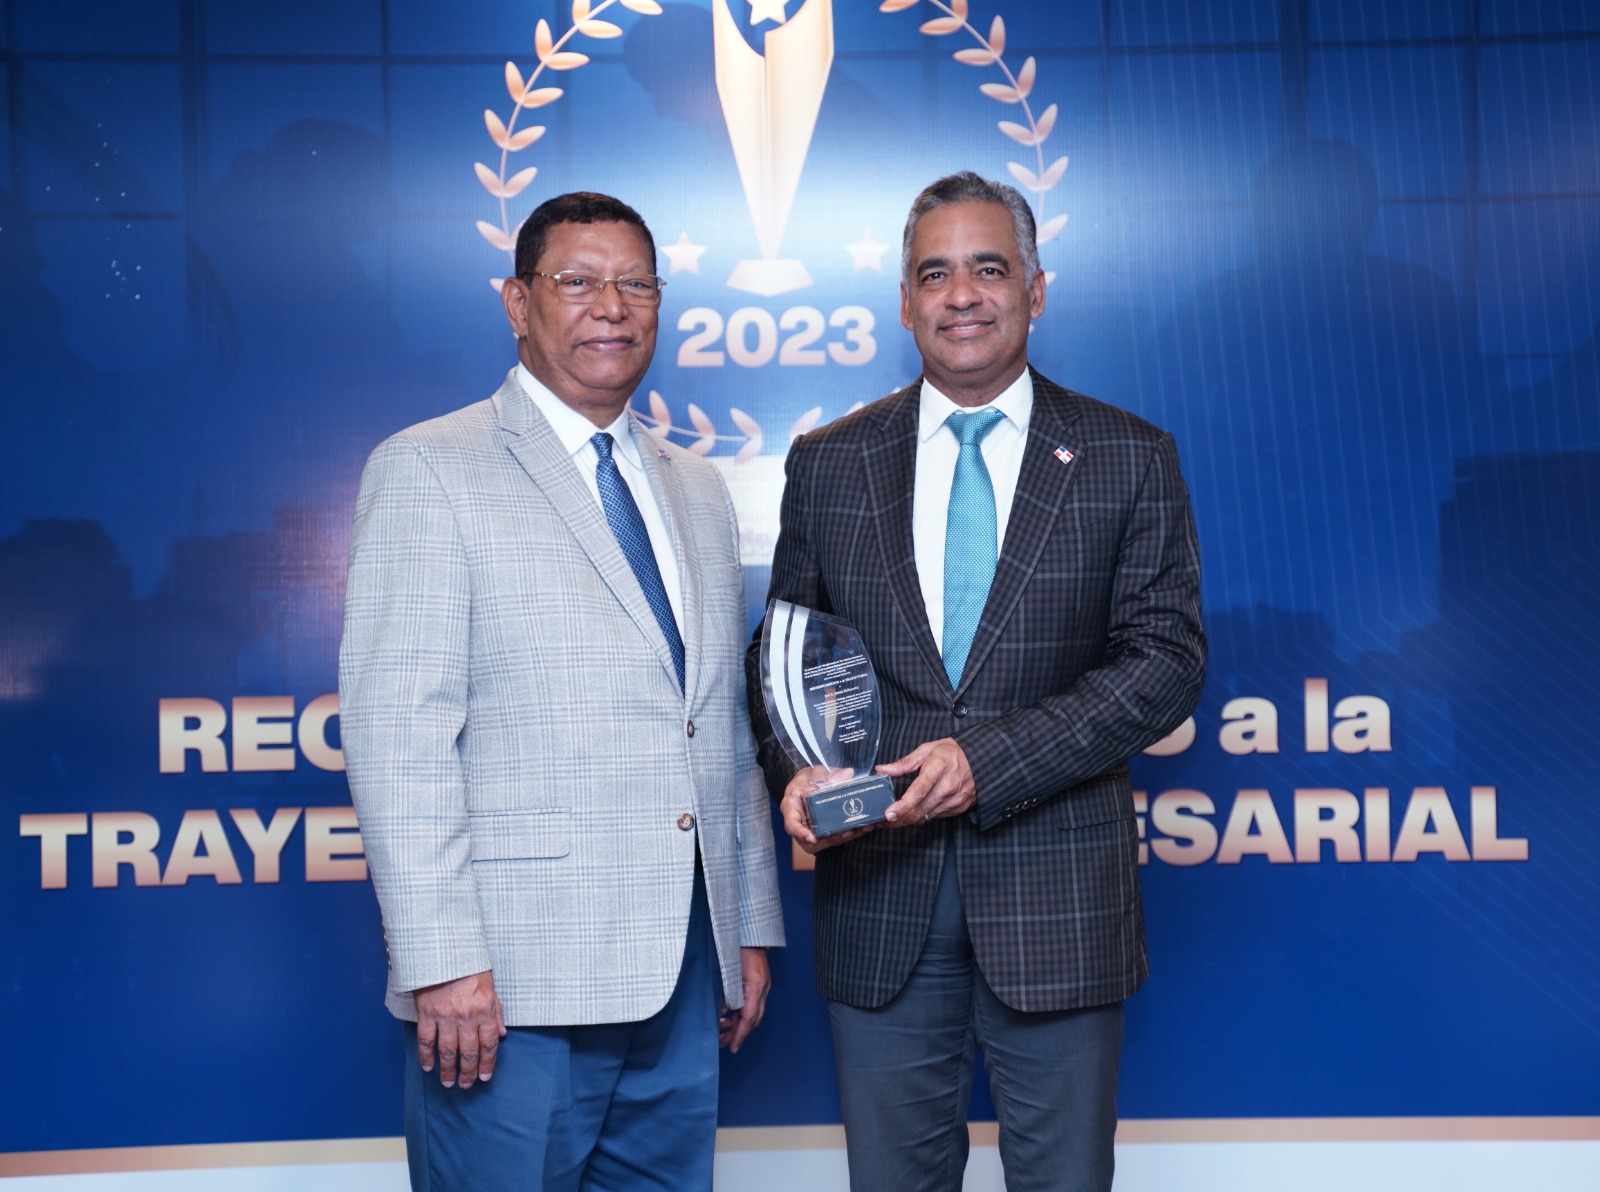 El ministro Joel Santos Echavarría recibe reconocimiento por trayectoria y aportes al país